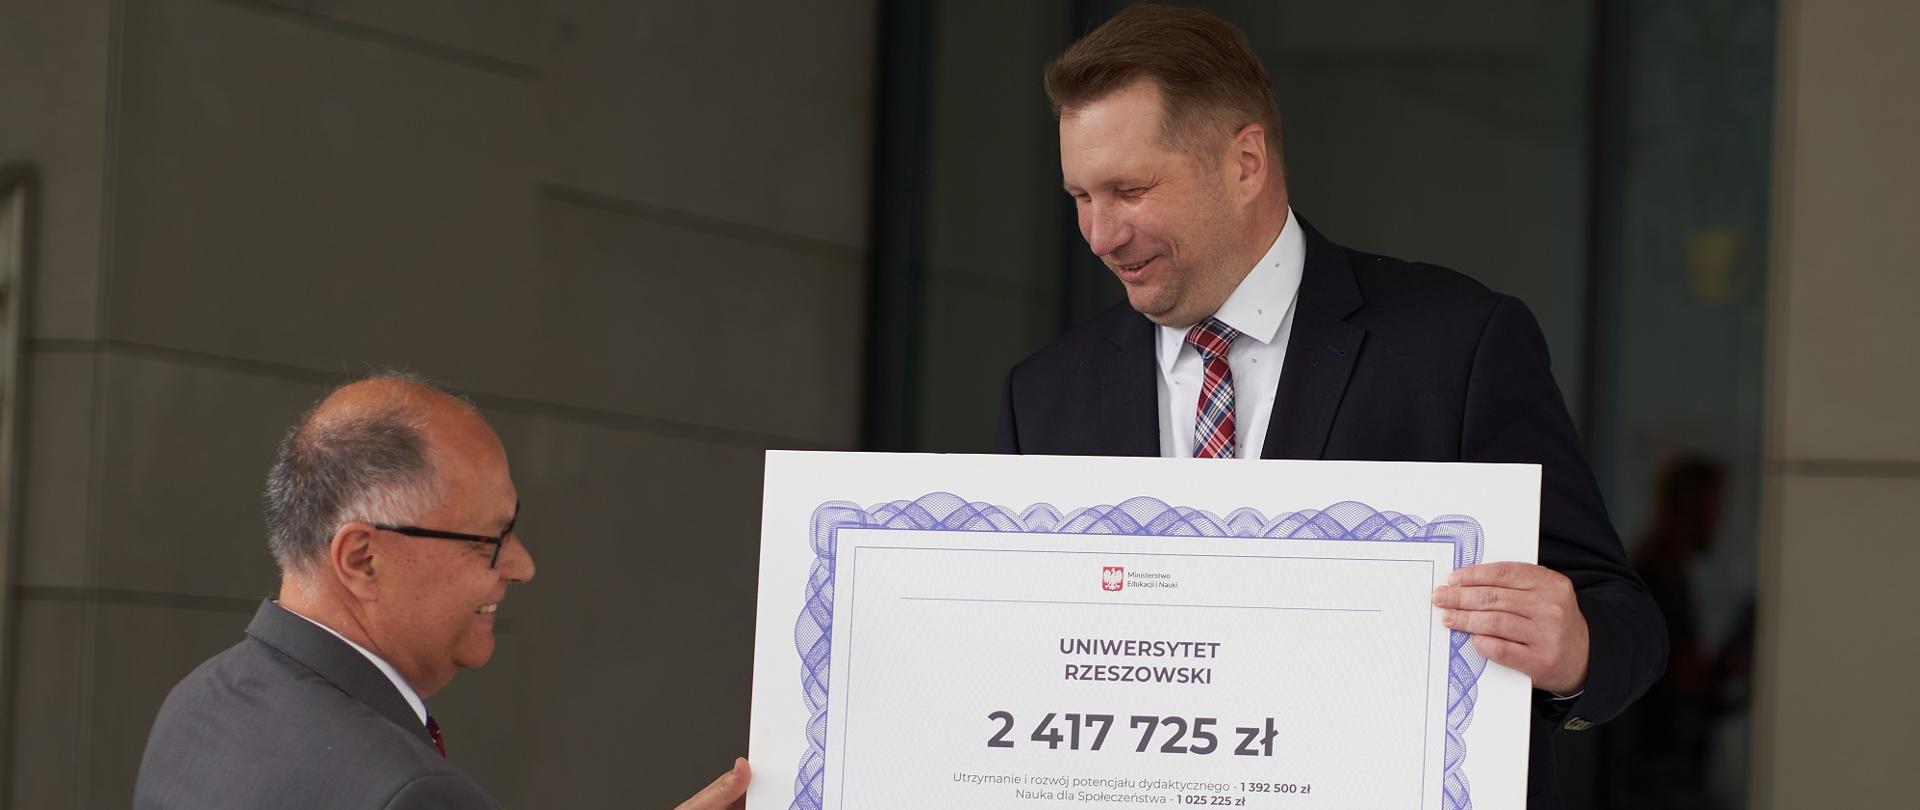 Minister pokazuje wielki symboliczny czek na kwotę 2 417 725 zł.